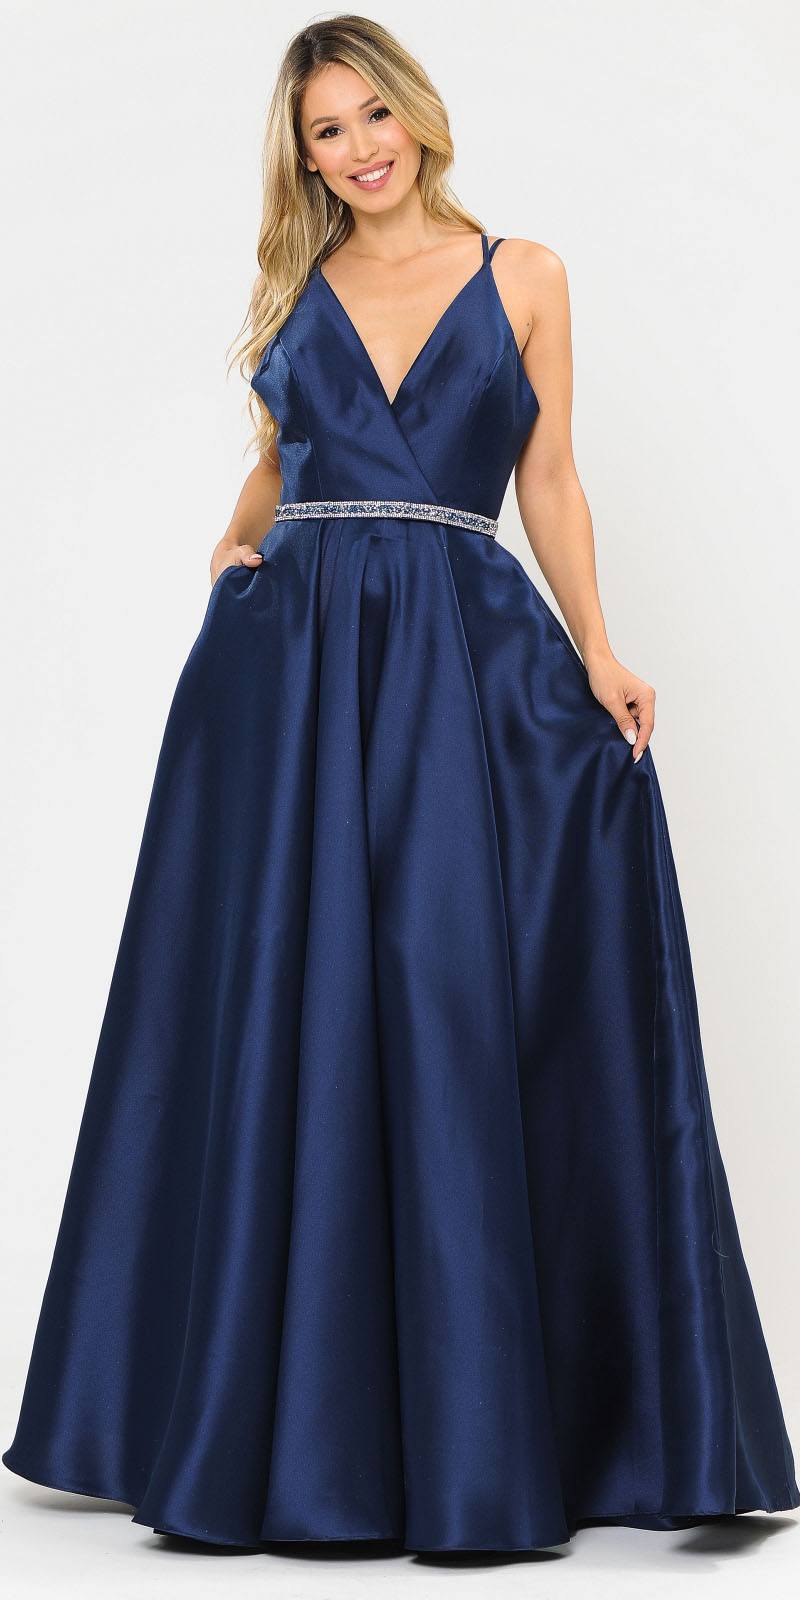 Poly USA 8690 V-Neck Long Prom Dress Navy Blue with Pockets